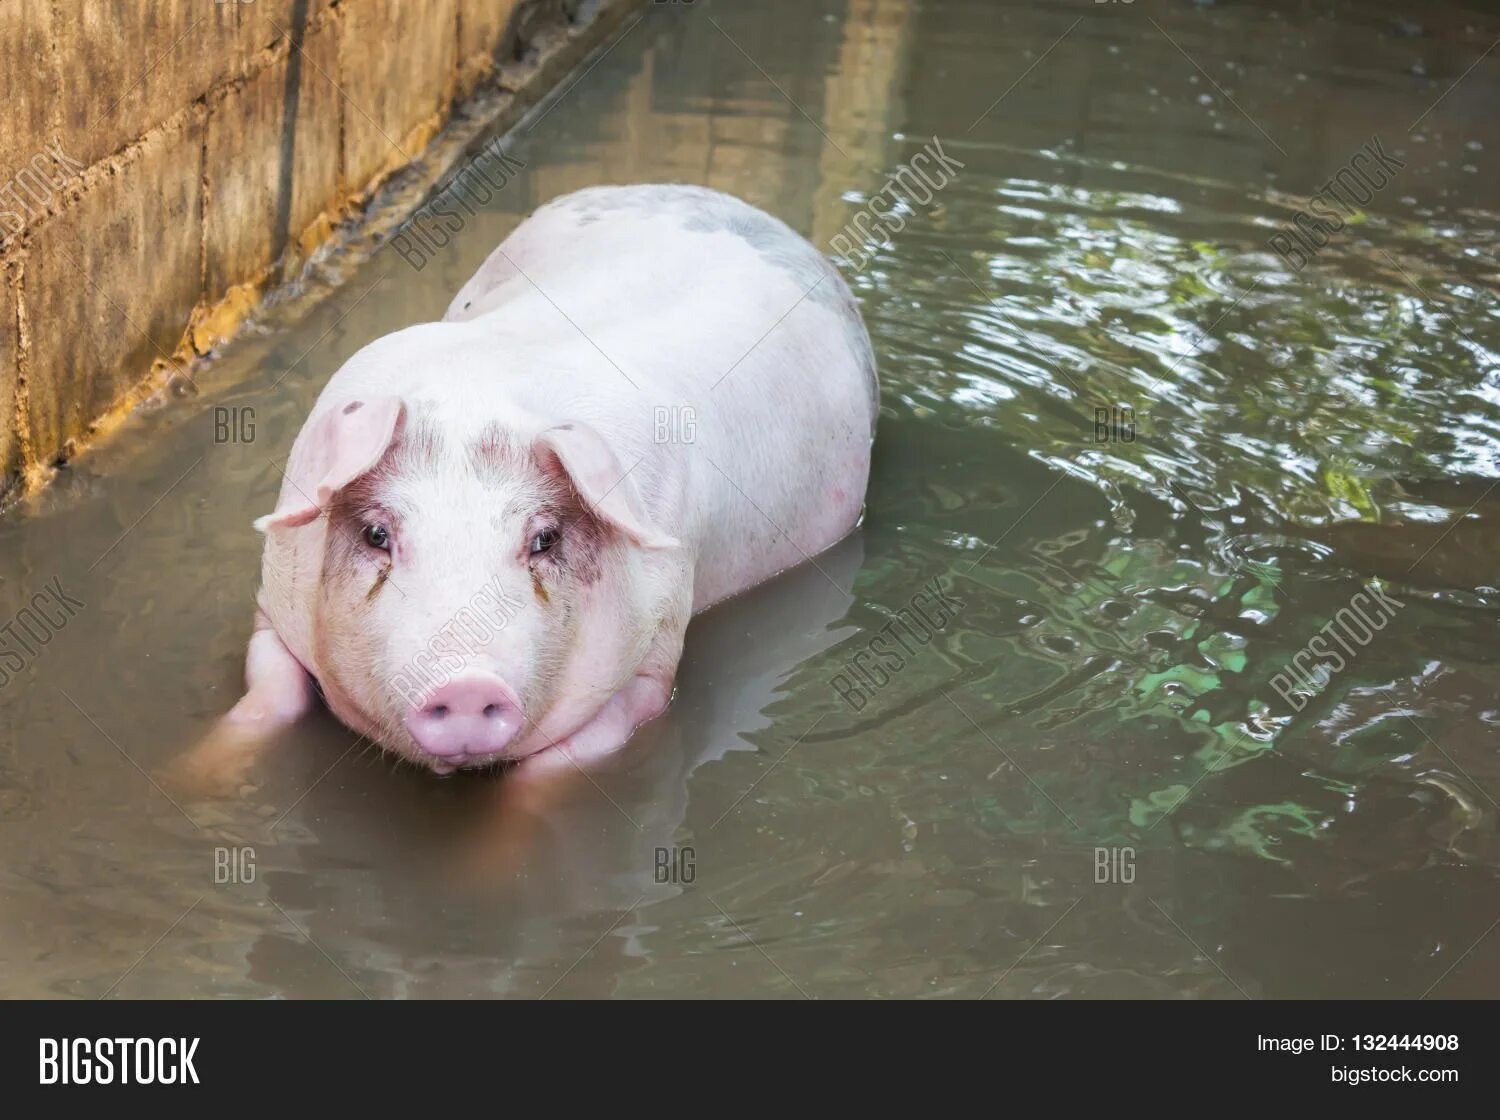 Поя чист. Свинья в воде. Свинка плавает. Поросенок в воде. Свинка в водичке.